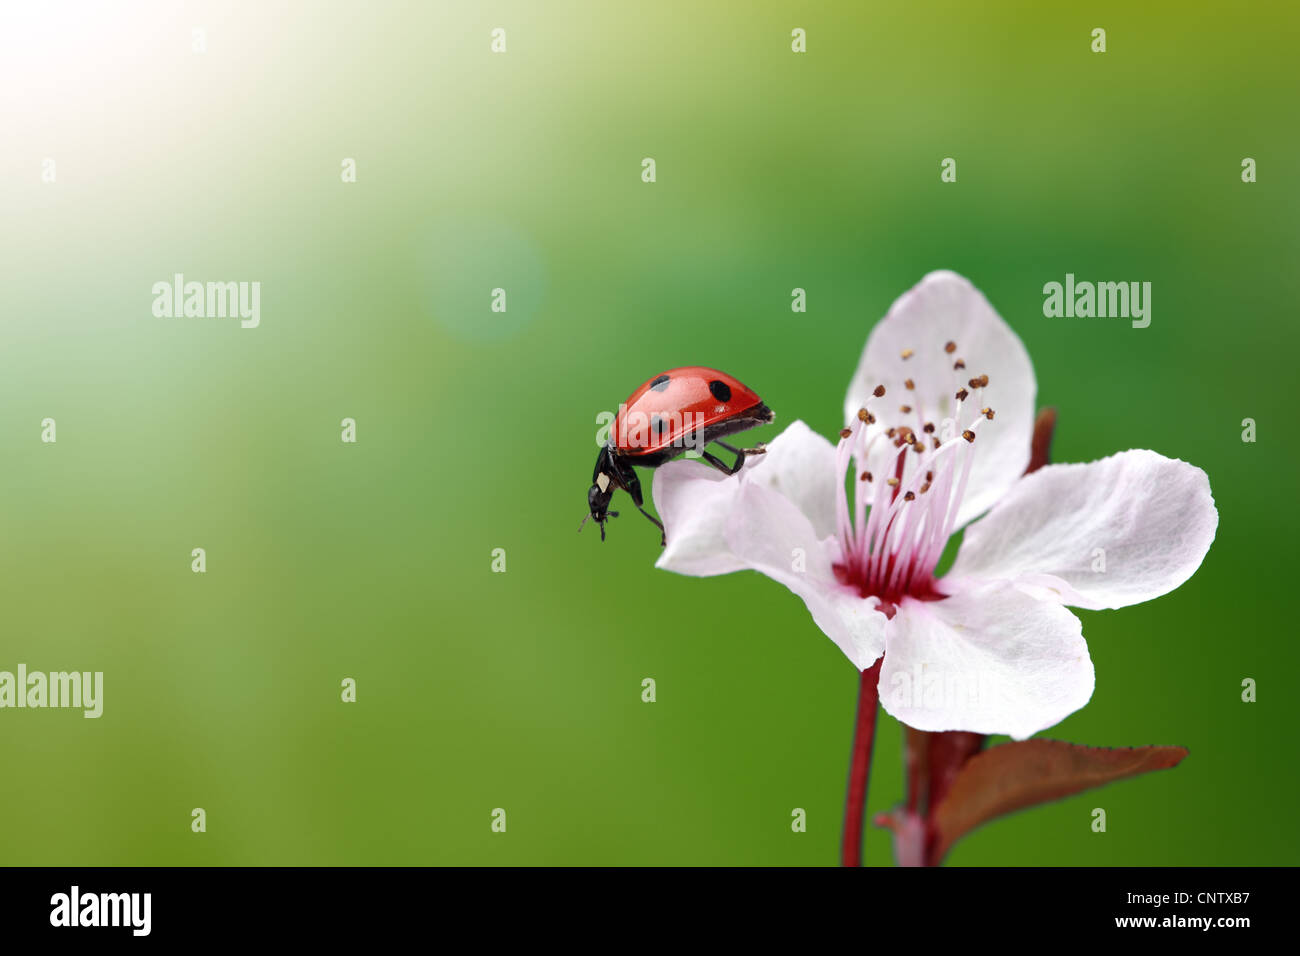 Ladybug on flower Stock Photo